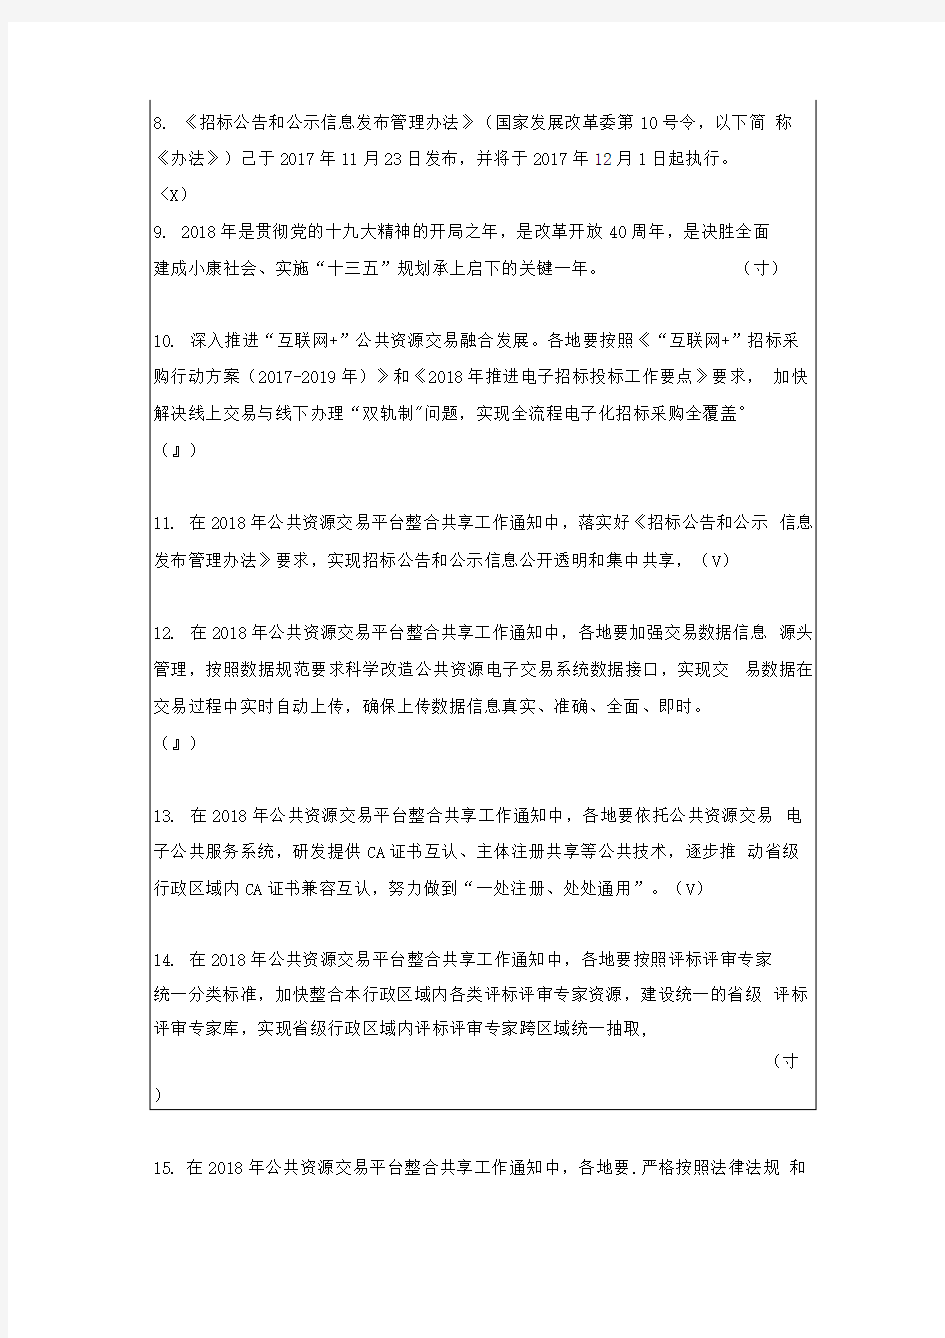 湖南省综合评标专家库在线培训系统知识题库(2020年版)》法律法规、评标办法、职业道德判断题